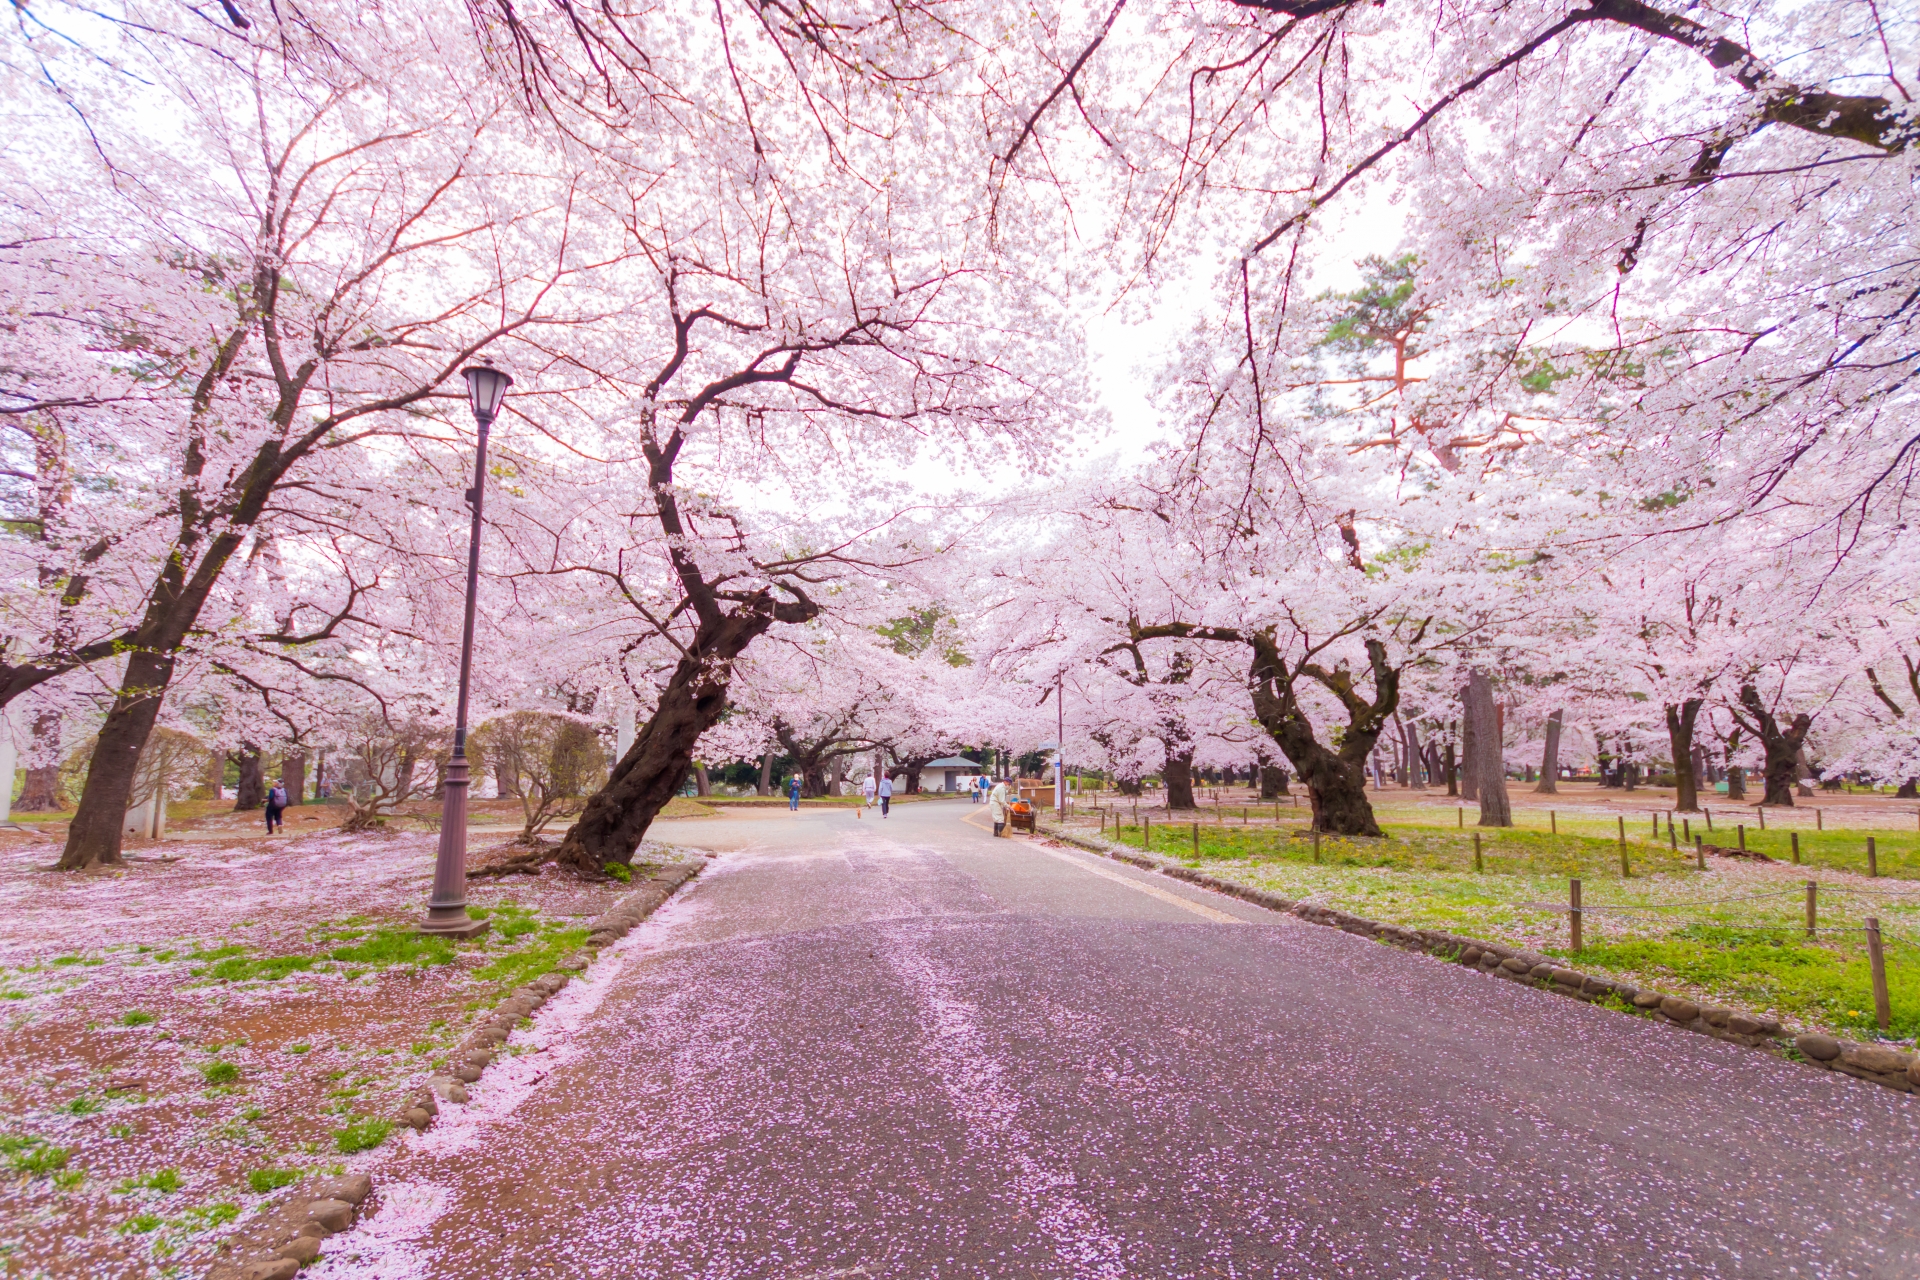 大宮公園桜まつり21 開花情報 状況など3月26日最新更新 情報発信ブログサイト Blue Rose